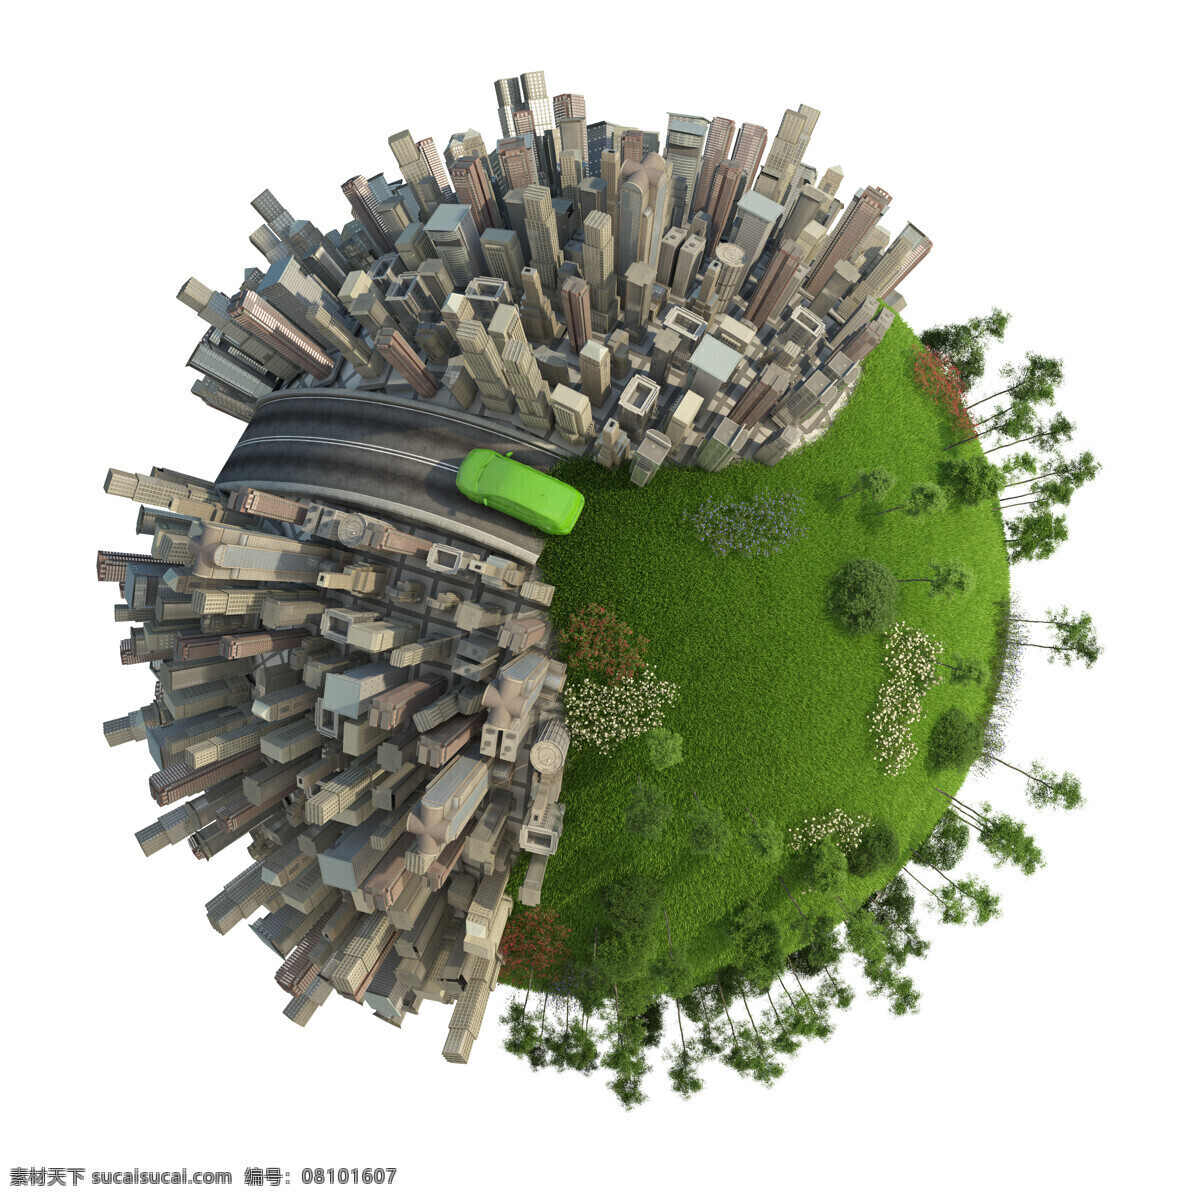 城市 建筑 地球 高楼大厦 城市建筑 环保概念 绿色环保 地球保护 生态环保 节能环保 其他类别 生活百科 白色